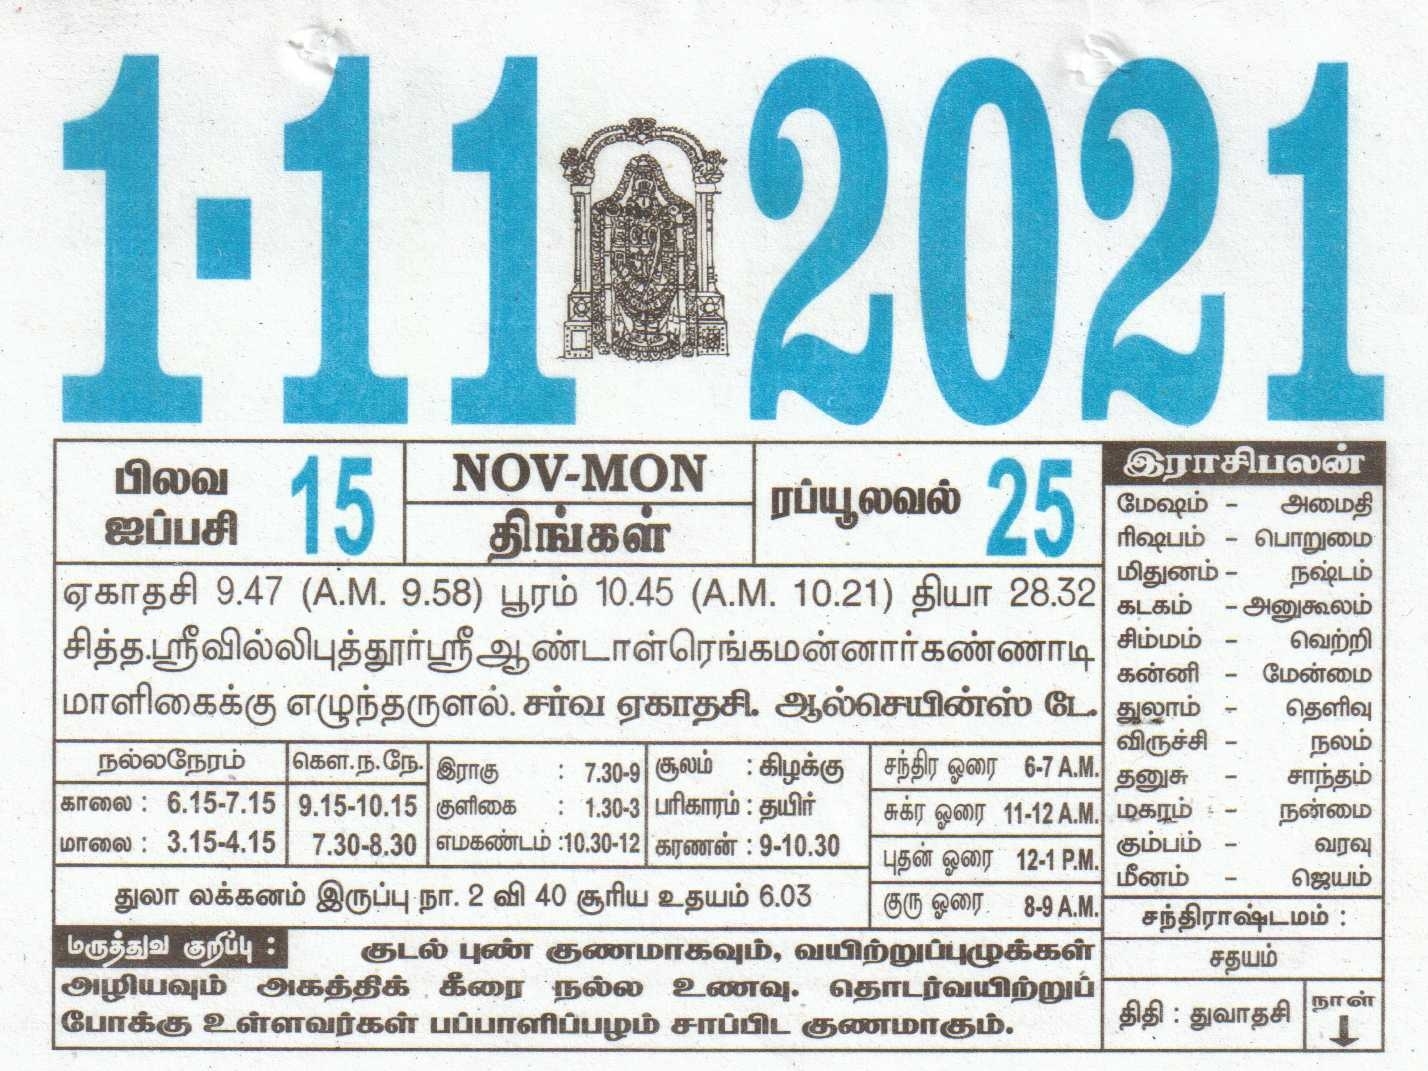 01-11-2021 Daily Calendar | Date 01 , January Daily Tear Off Calendar | Daily Panchangam Rasi Palan Tamil Daily Calendar 2021 September